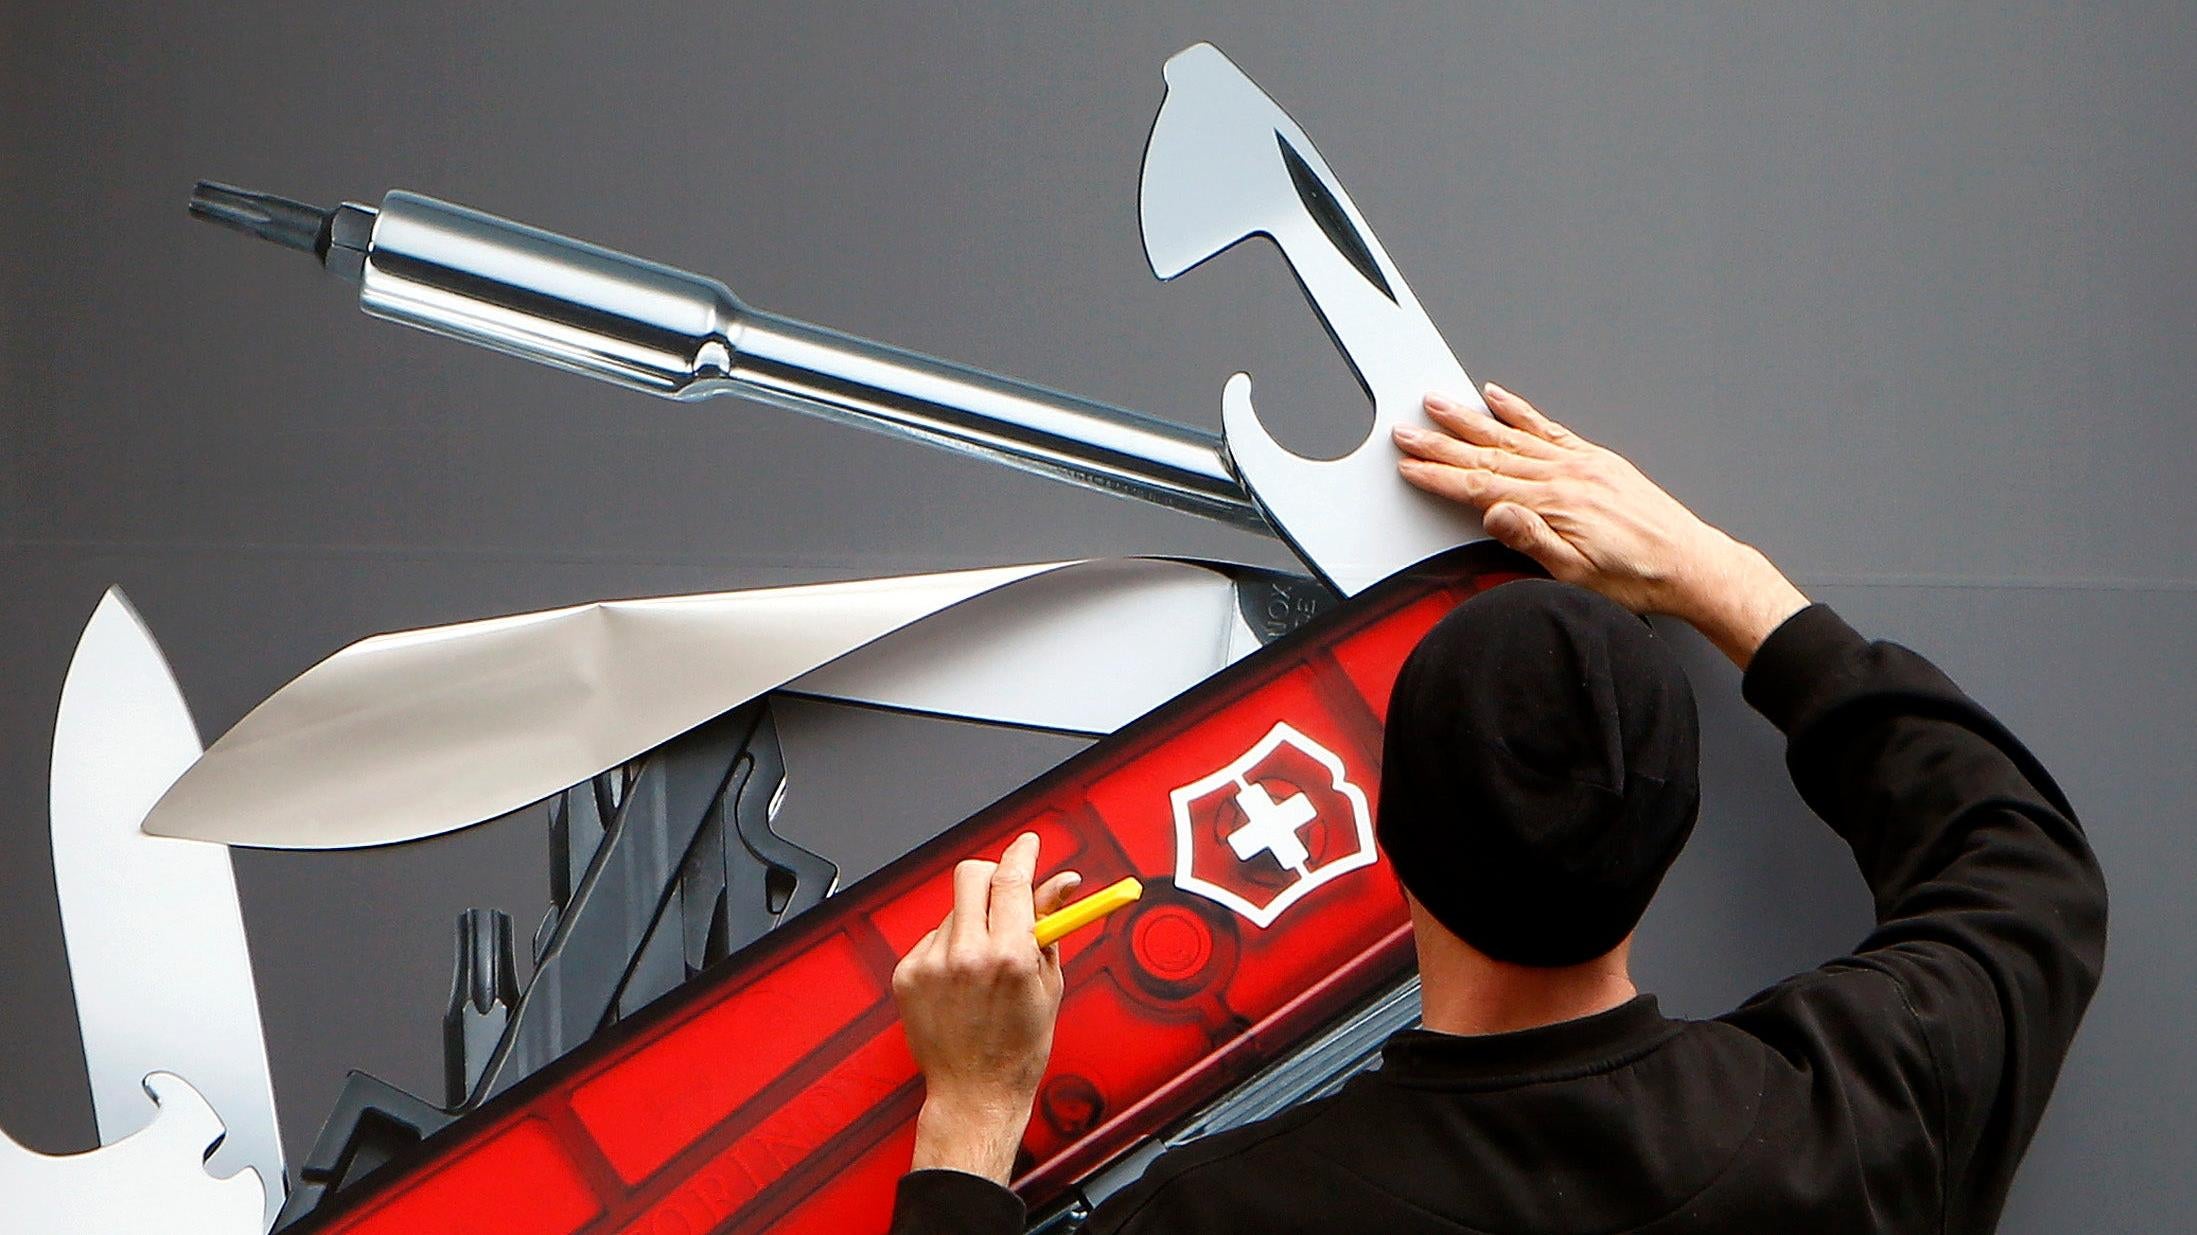 У будущих швейцарских армейских ножей не будет лезвий, заявляет производитель Victorinox